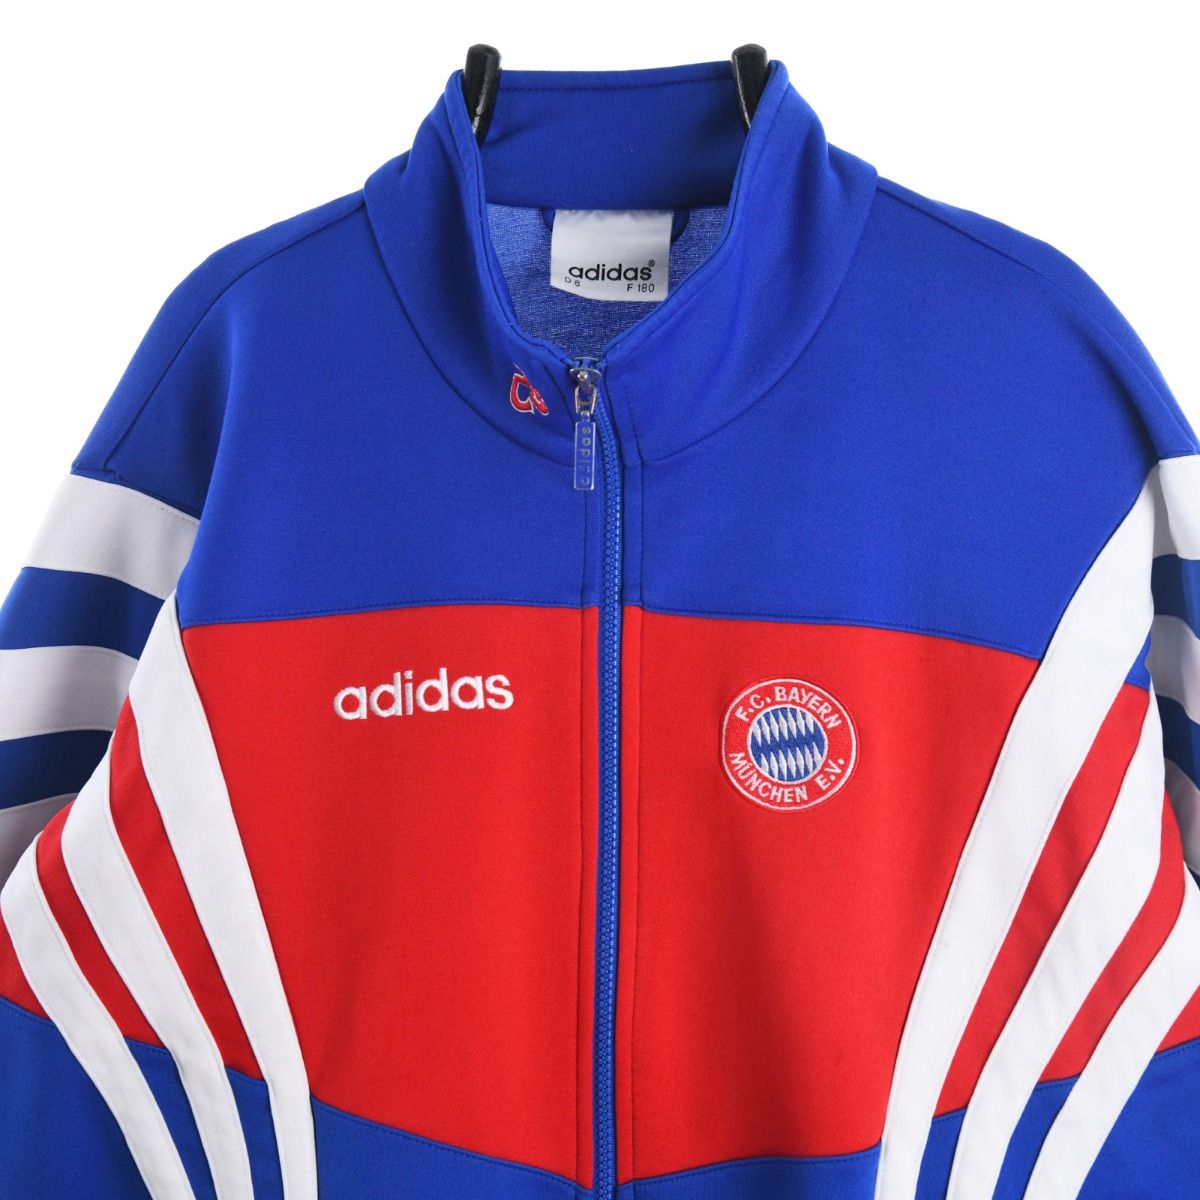 Adidas X Bayern Munich 1990s Track Jacket